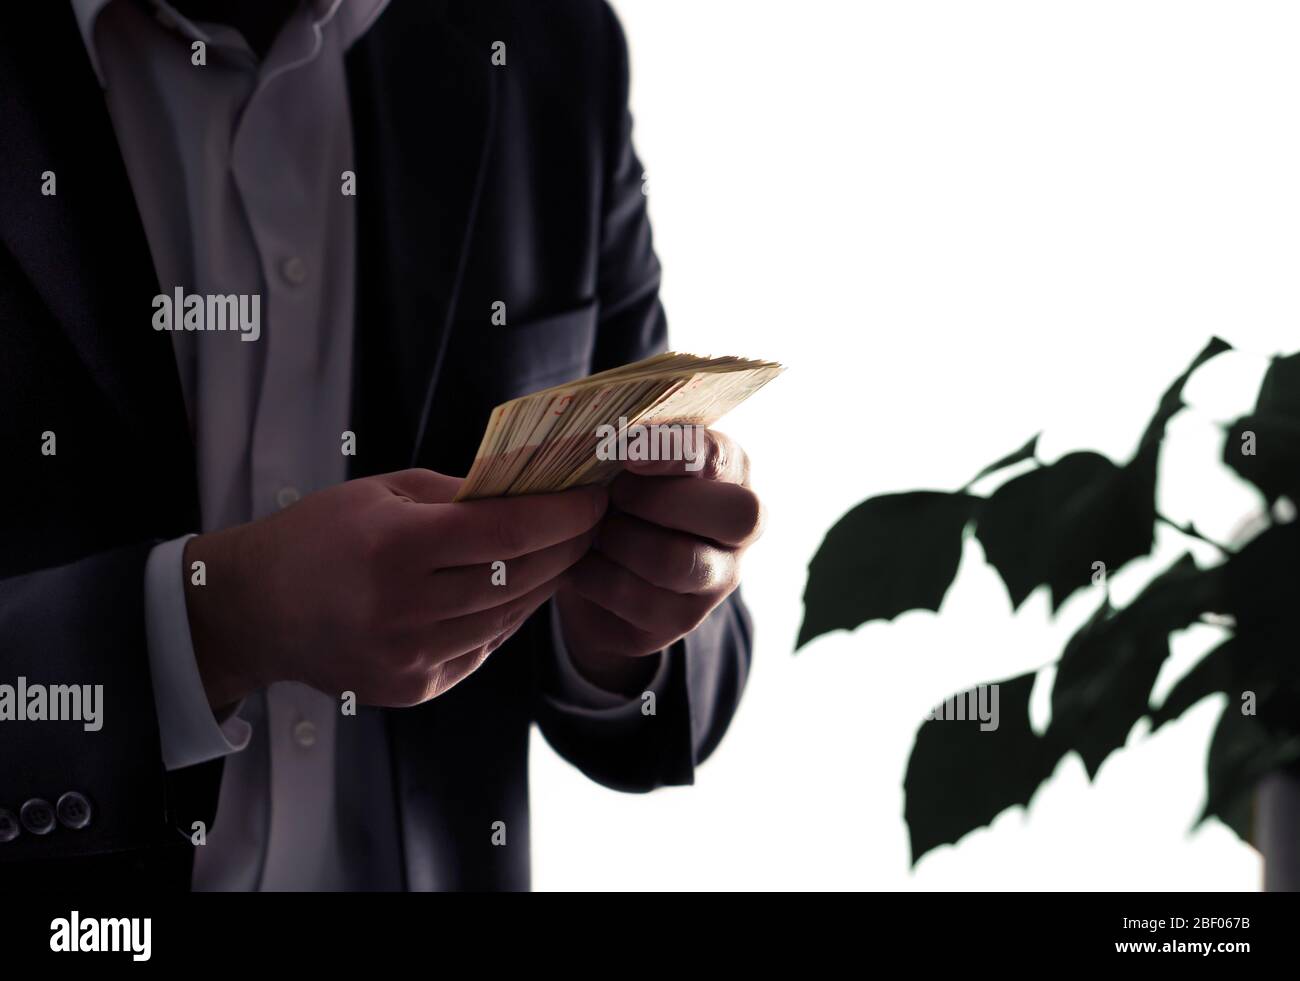 Ambiente o eco-business e finanza. Investire nell'energia sostenibile e verde. Uomo in tuta contando denaro. Pianta con foglie. Avvocato ambientale. Foto Stock